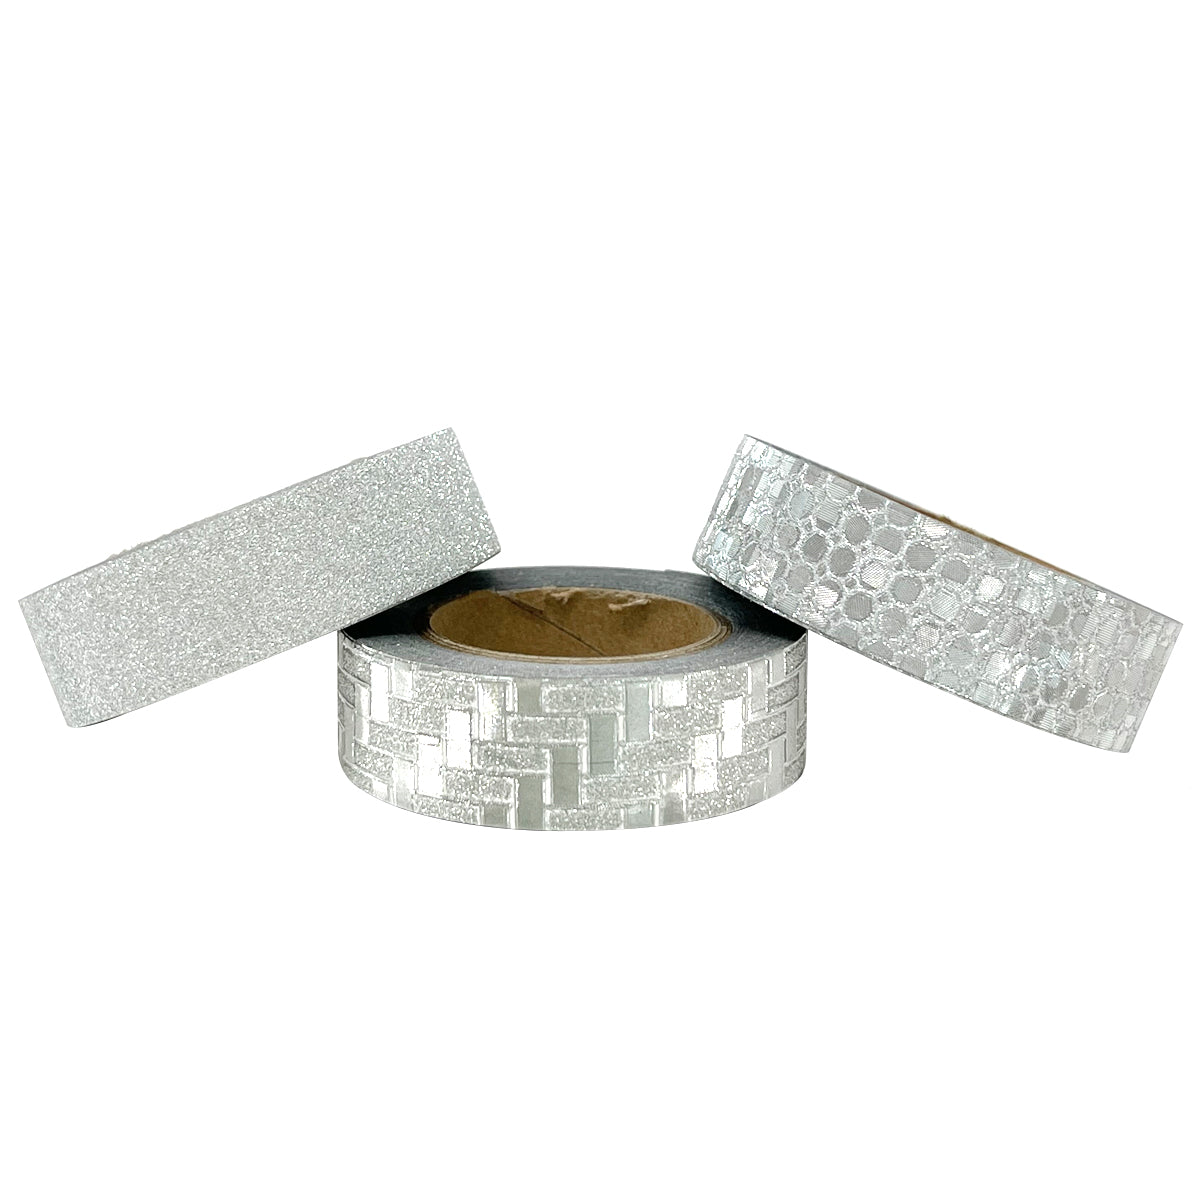 Wrapables Washi Tapes Decorative Masking Tapes, Set of 12 ADSET29